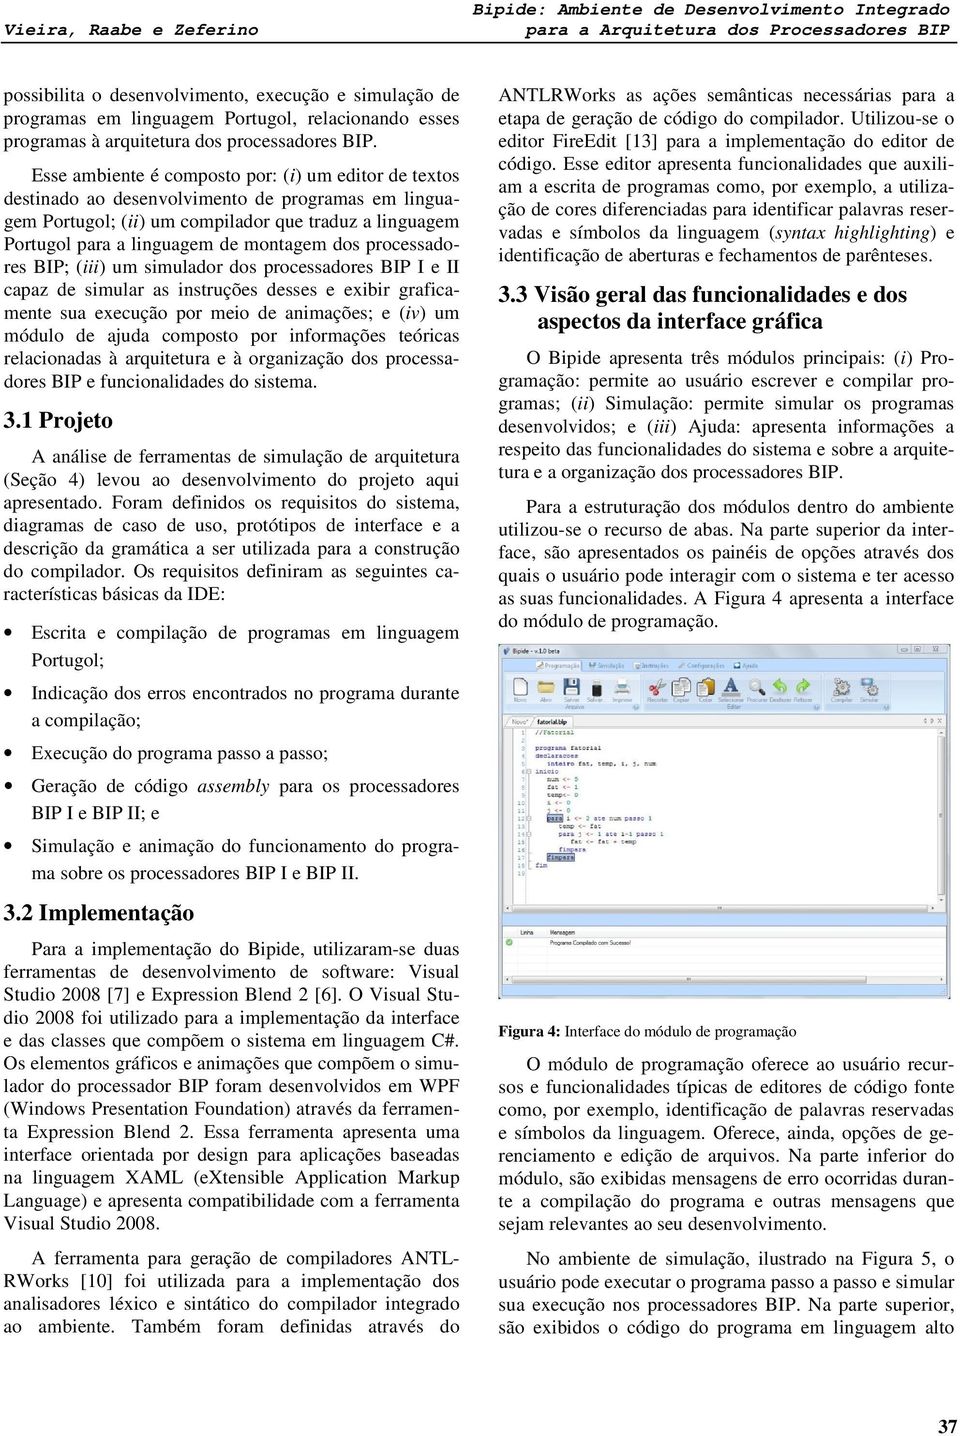 Esse ambiente é composto por: (i) um editor de textos destinado ao desenvolvimento de programas em linguagem Portugol; (ii) um compilador que traduz a linguagem Portugol para a linguagem de montagem